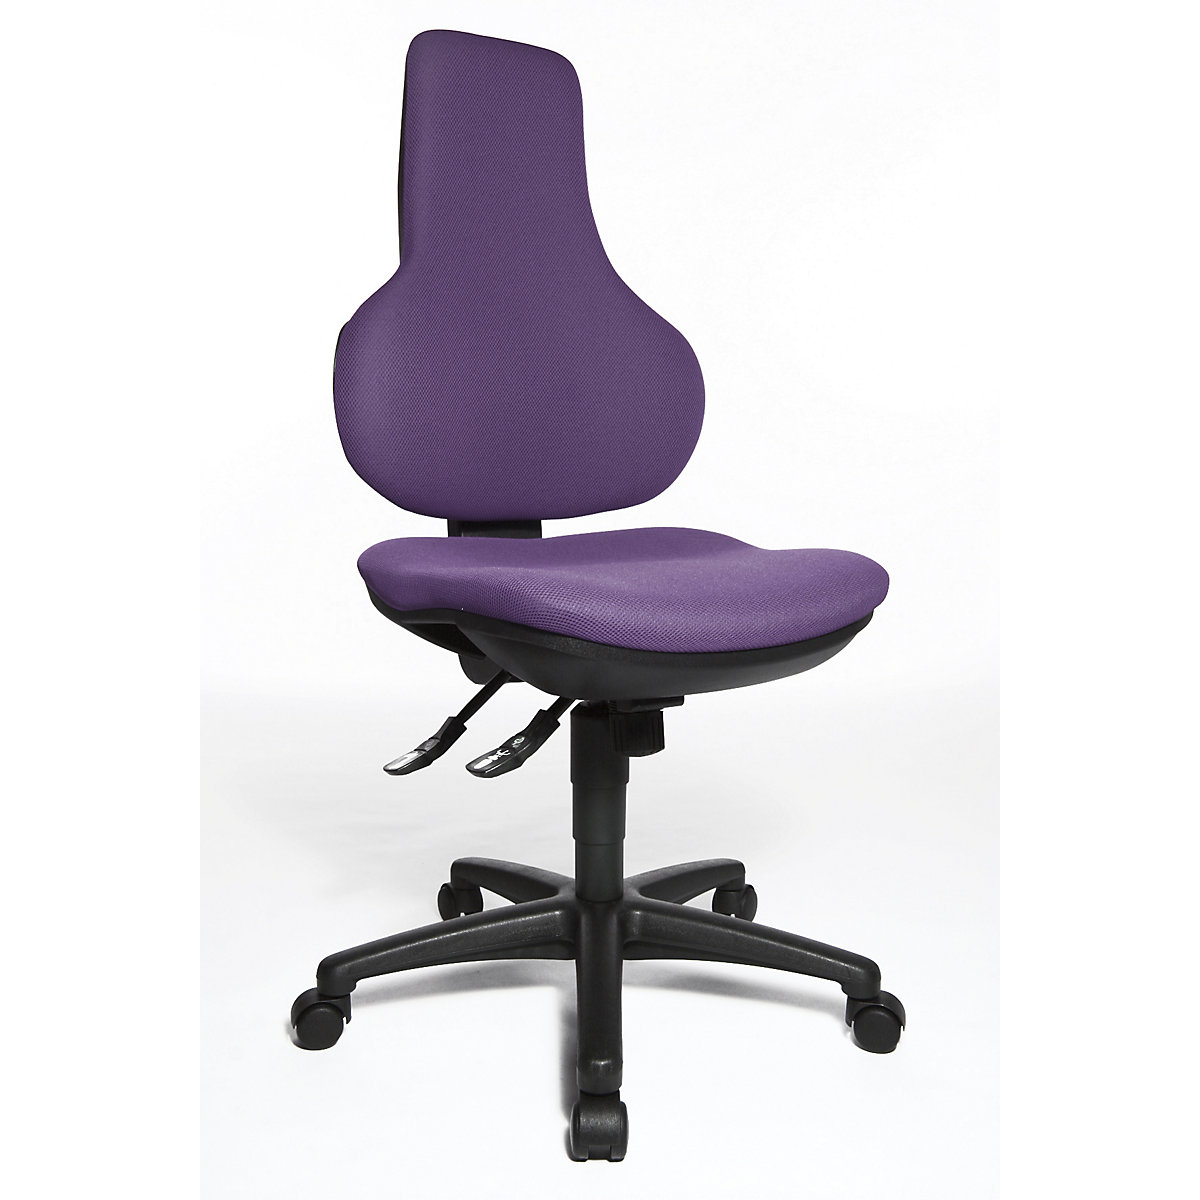 Okretna uredska stolica ERGO POINT SY – Topstar, s ergonomskim naslonom za leđa s mogućnošću namještanja visine, u ljubičastoj boji-3